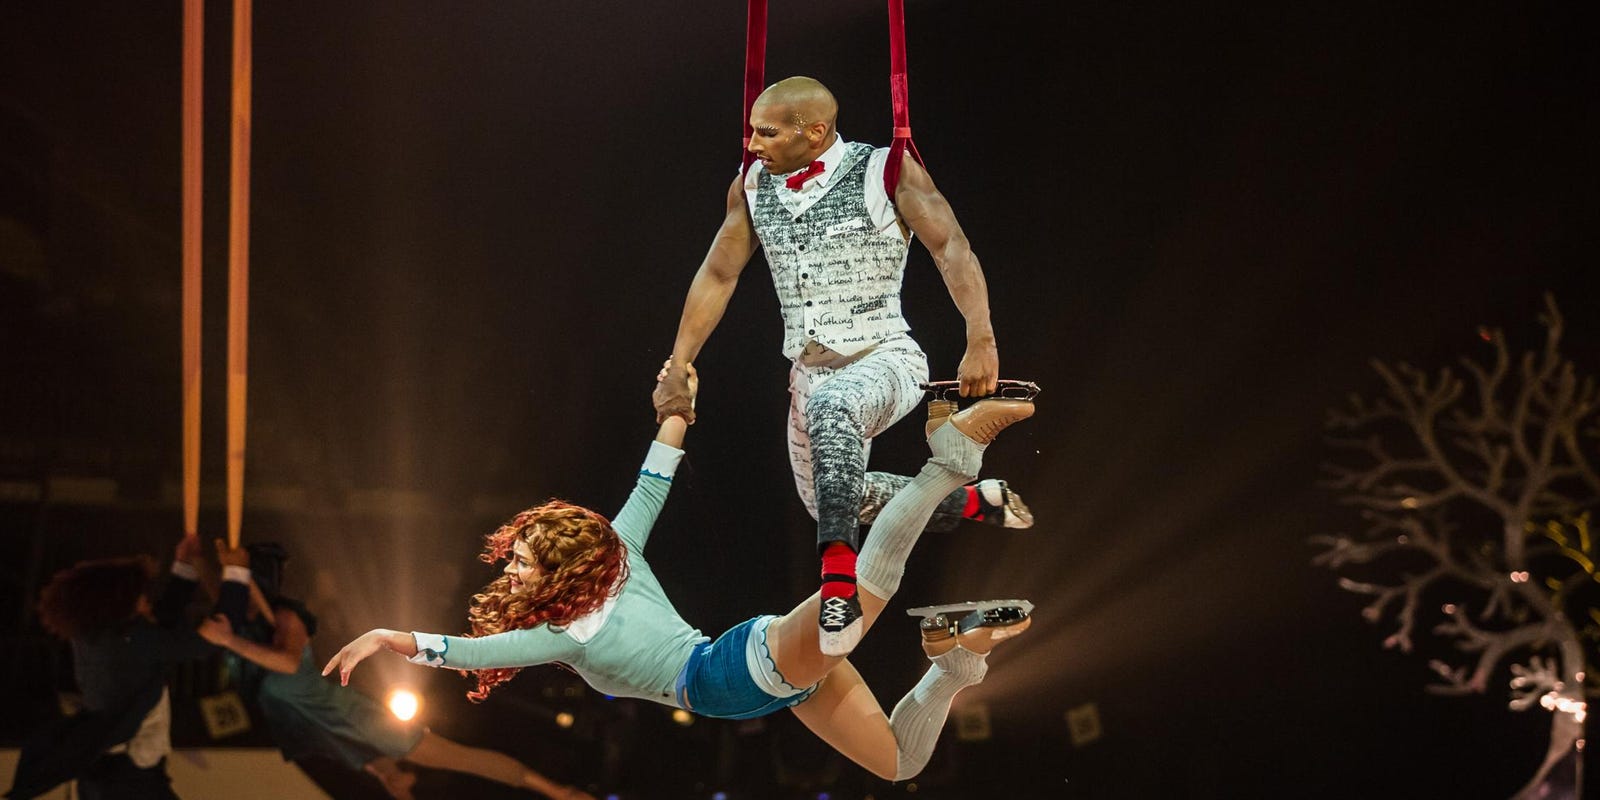 Cirque du Soleil presents iceshow ‘Crystal’ at Little Caesars Arena